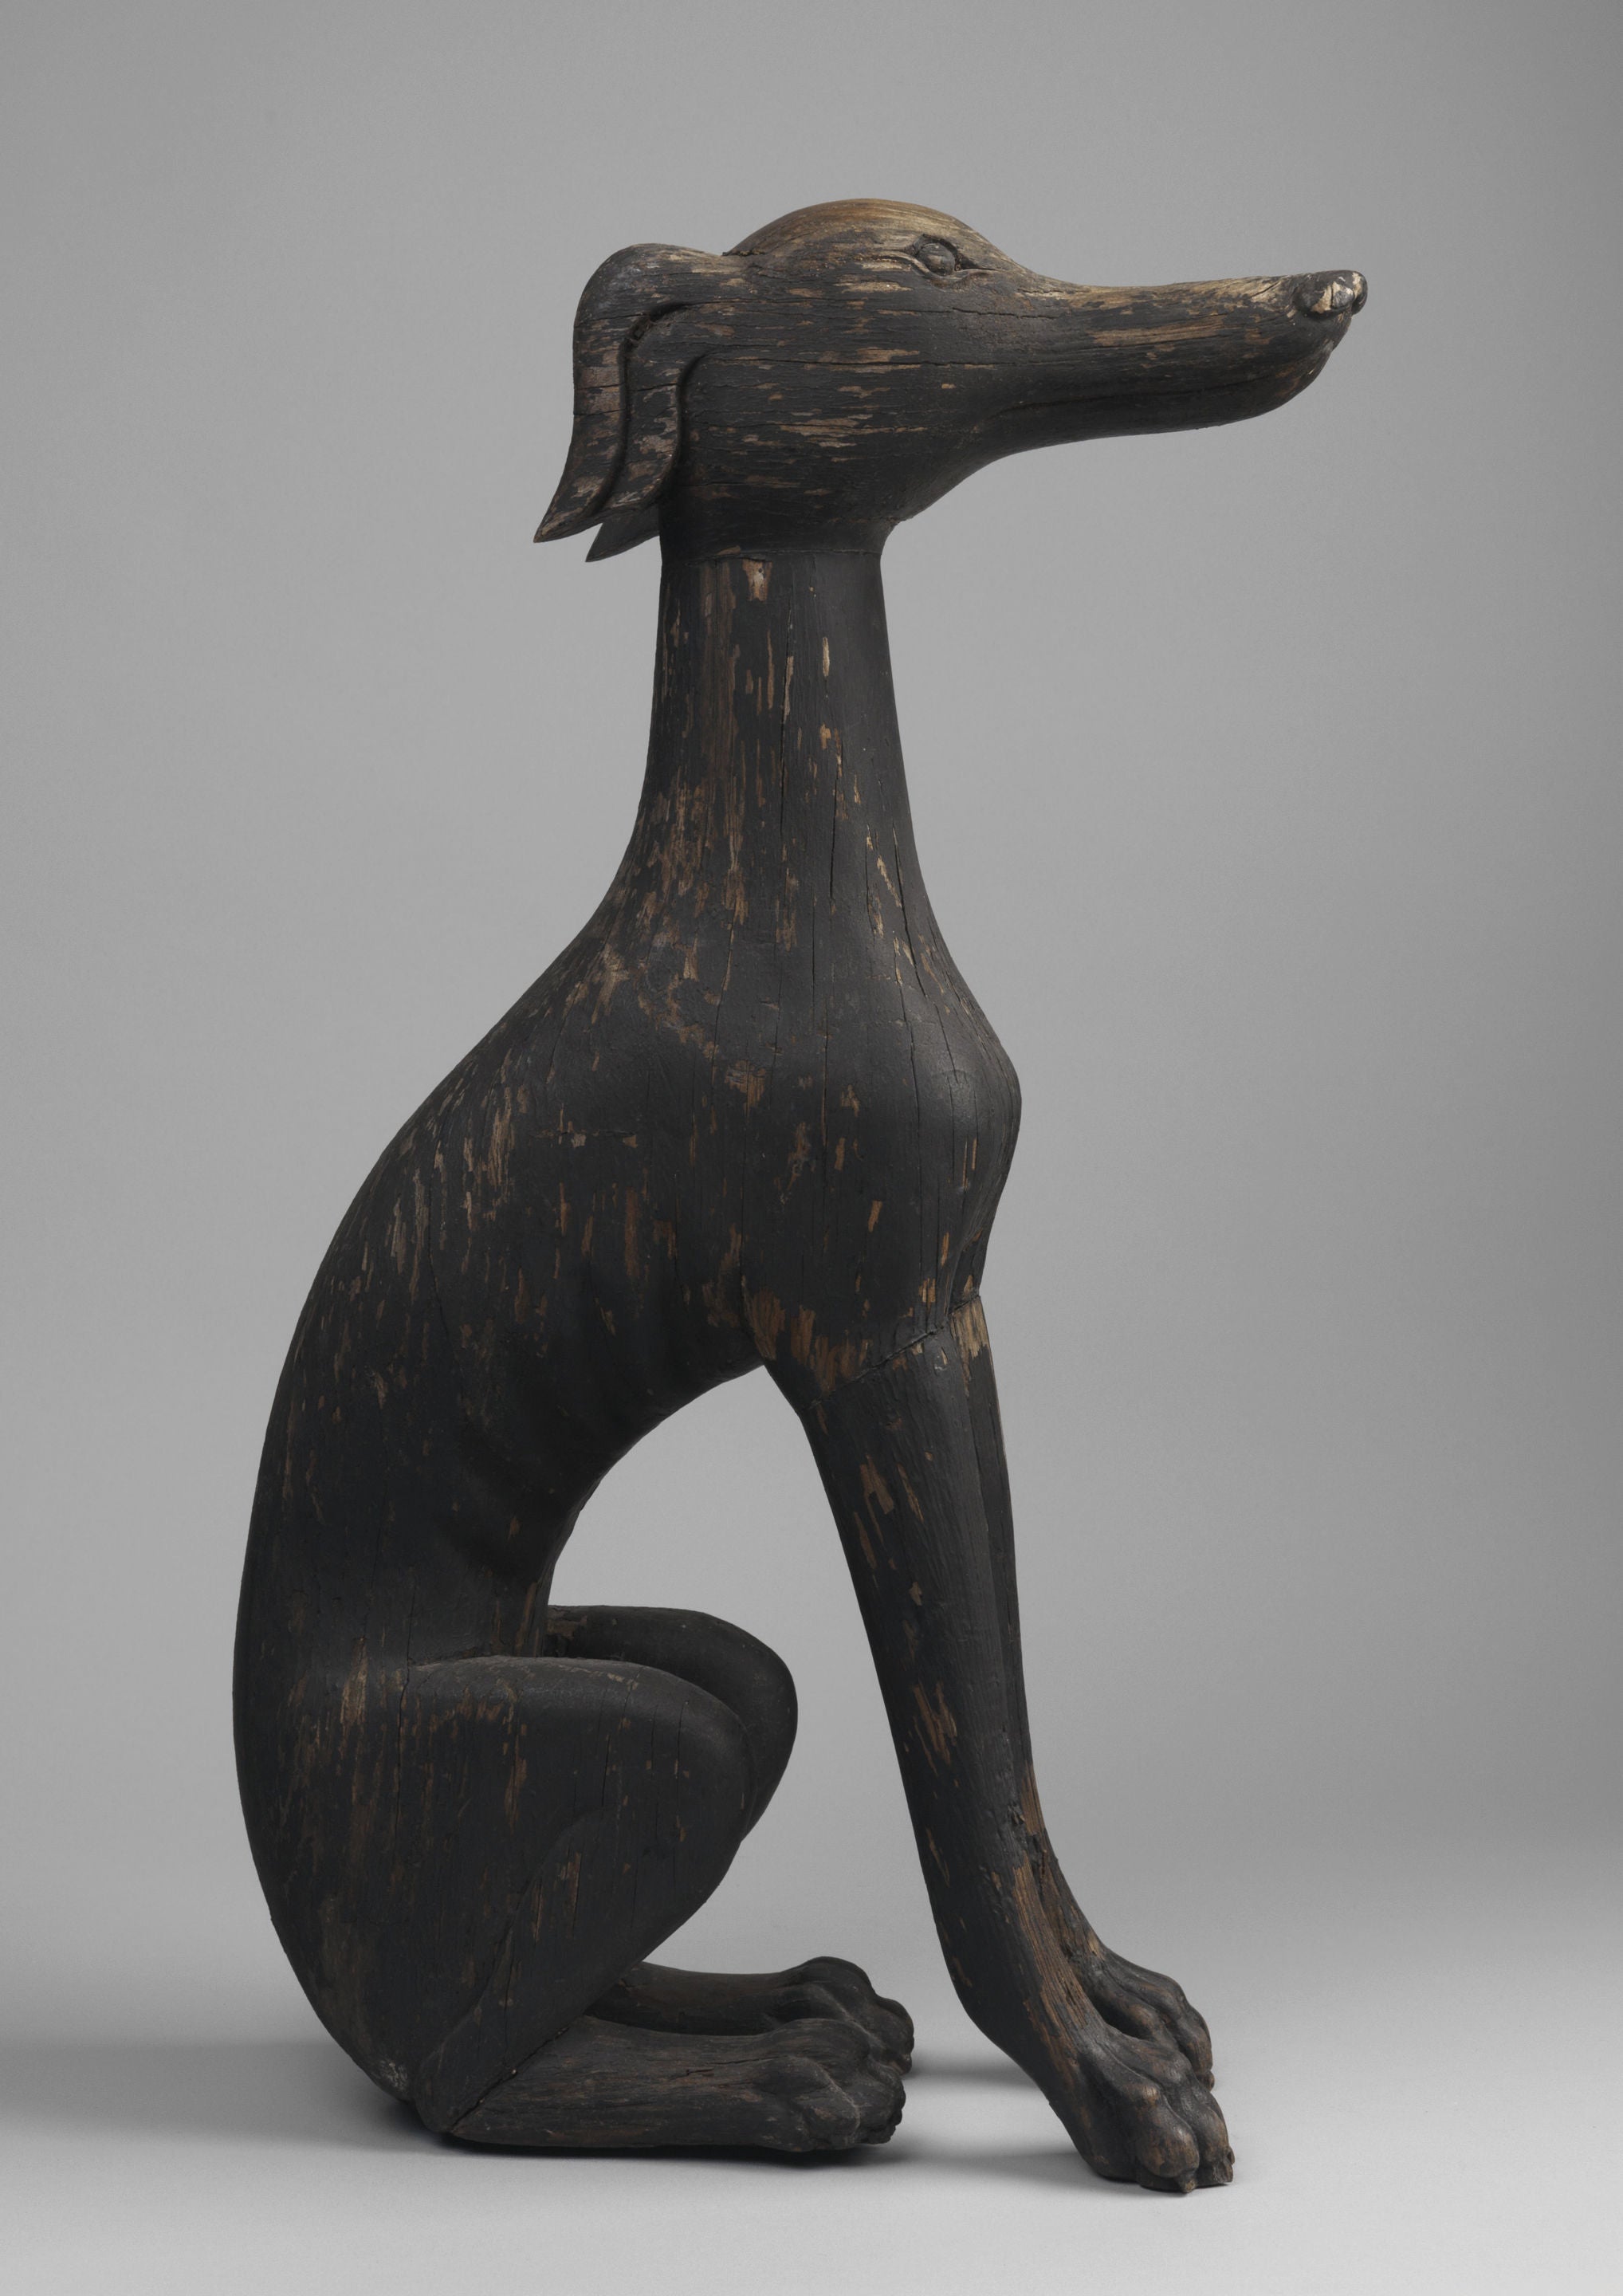 Folk Art Sculpture of A Seated Greyhound